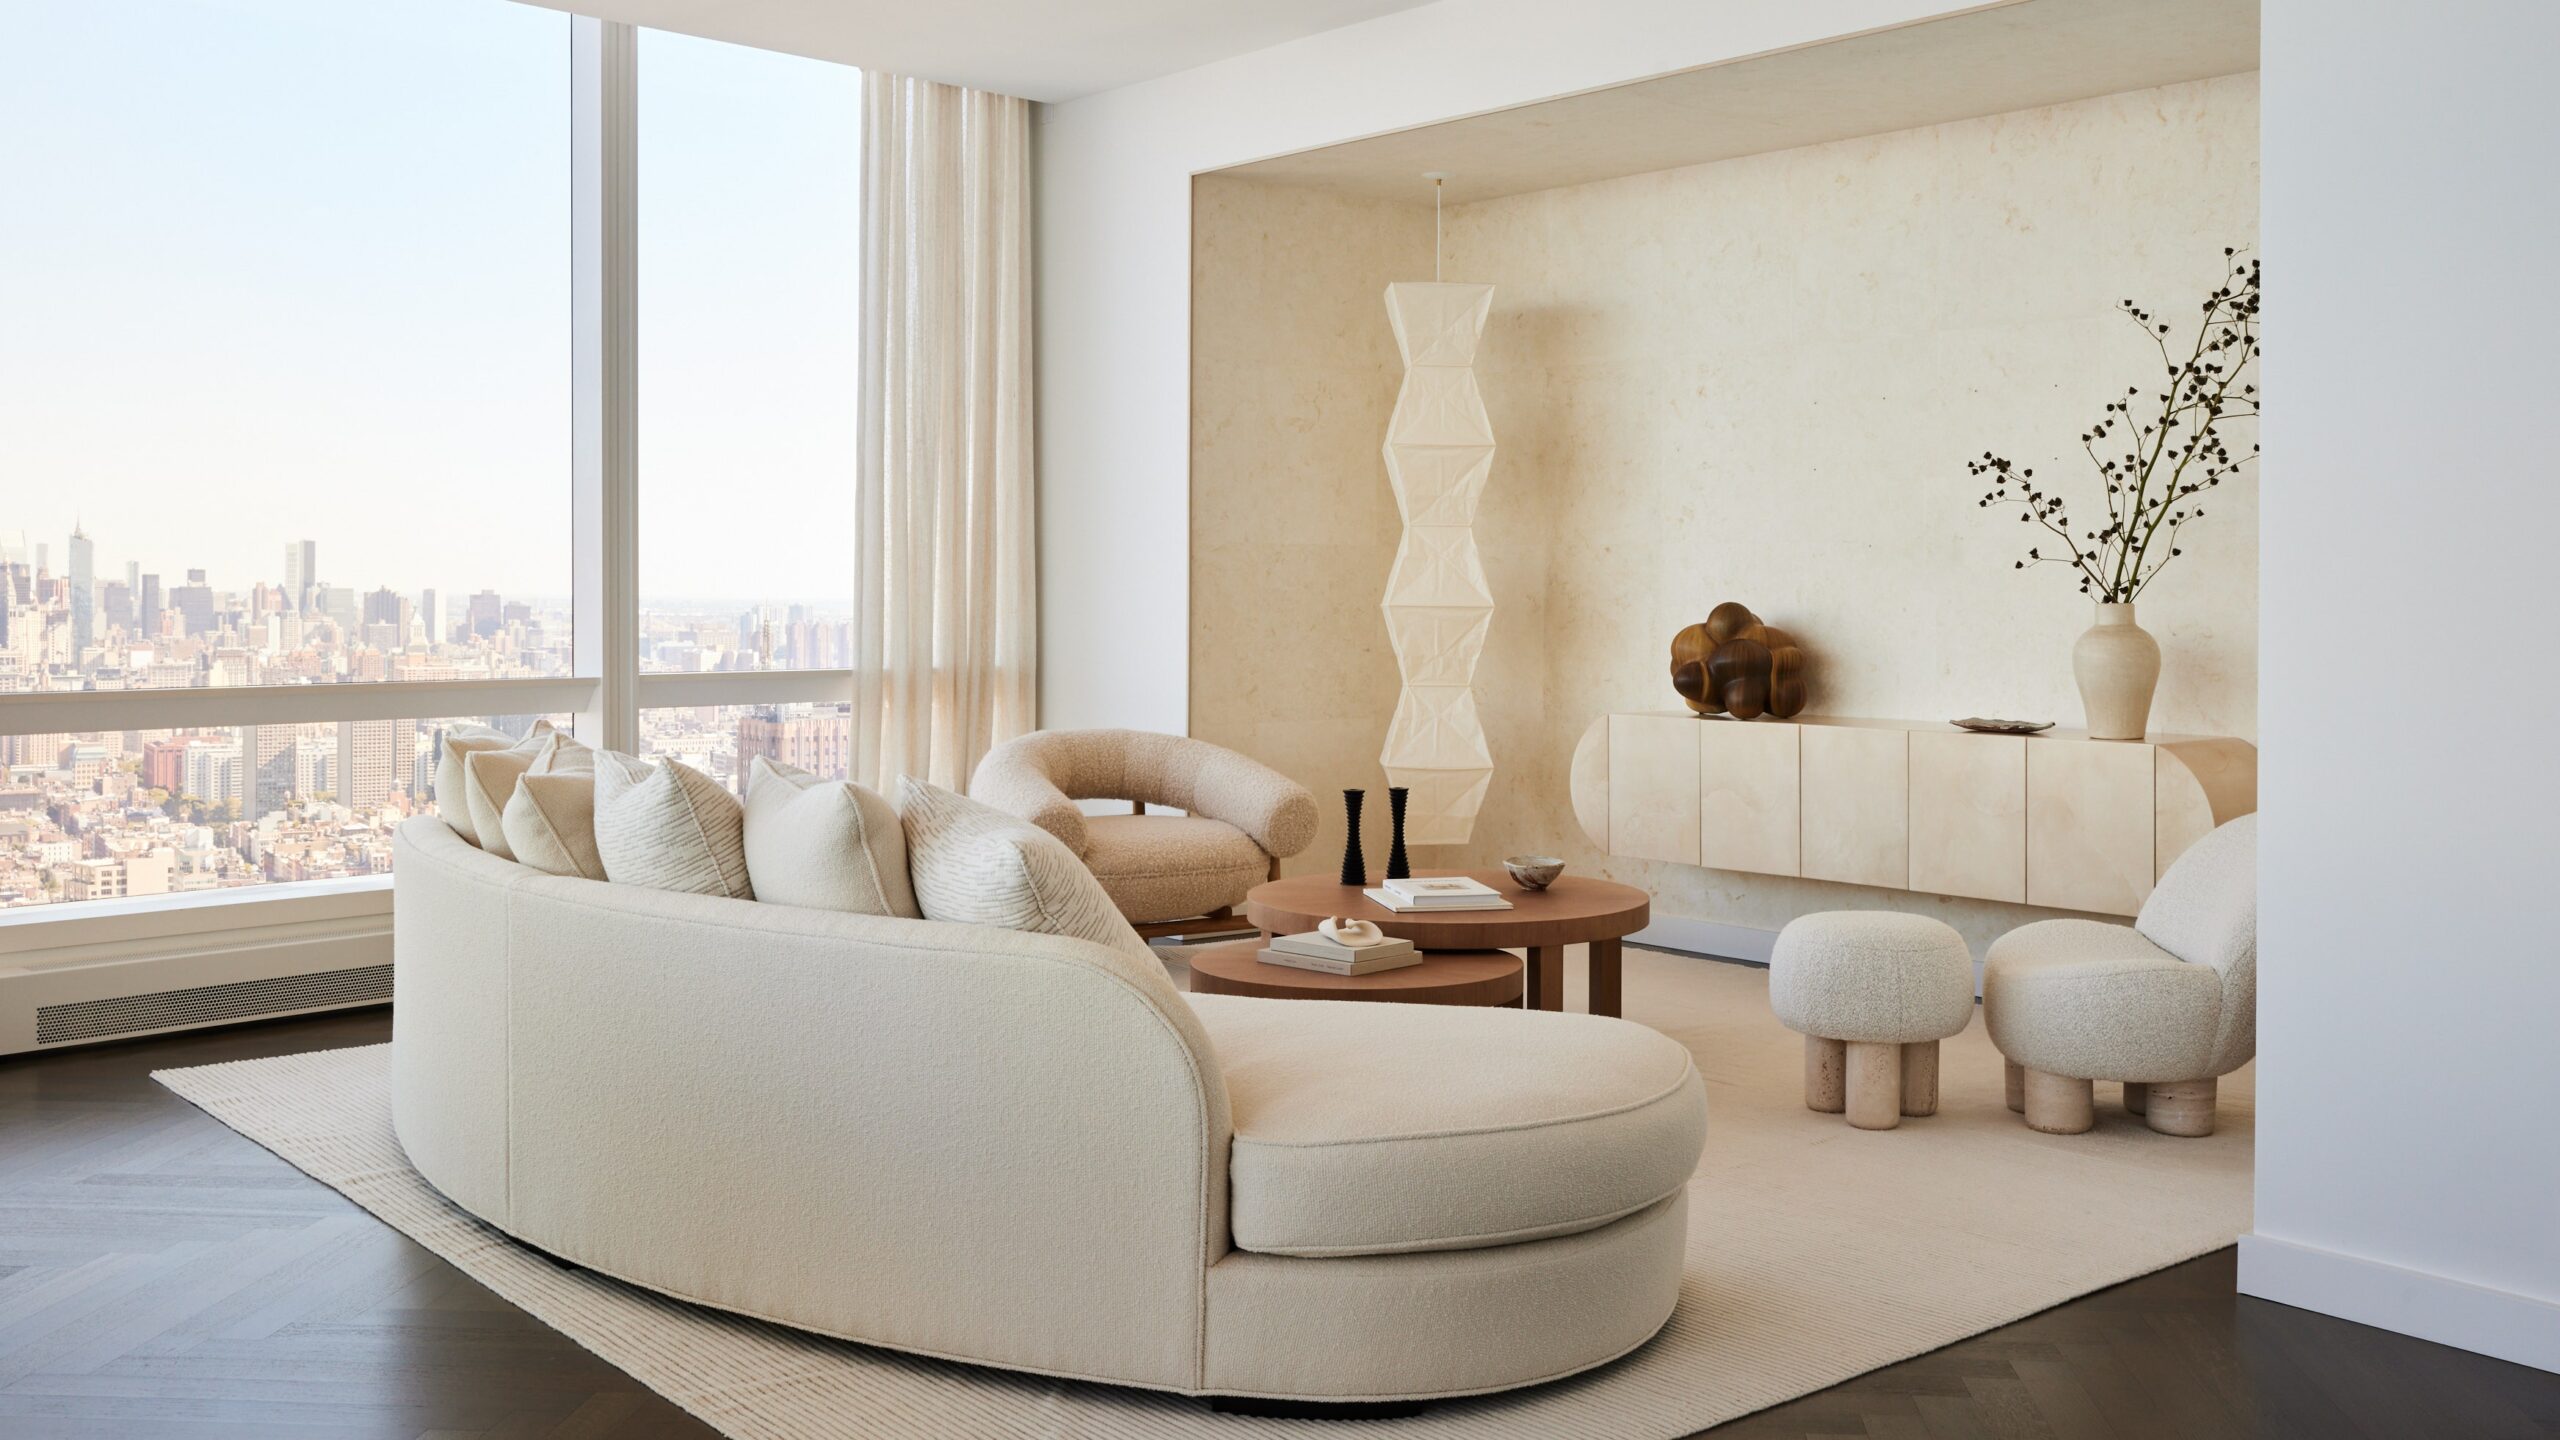 interiores minimalistas con tonos claros y luminosos scaled